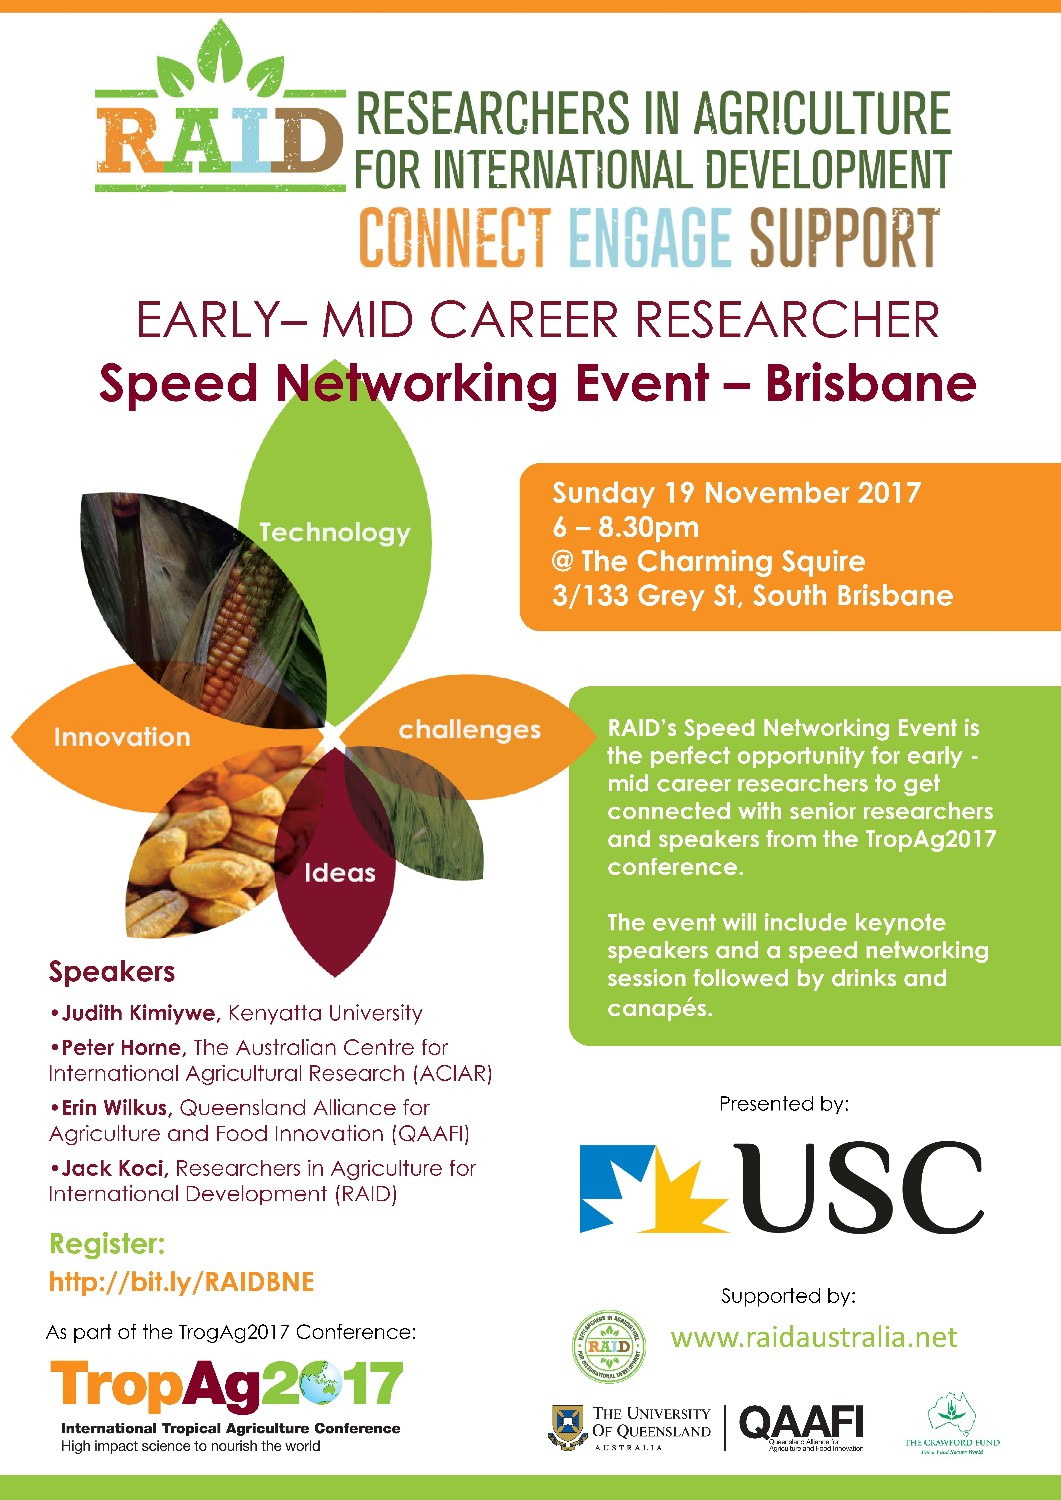 Speed networking event – Brisbane (Sun 19th Nov)